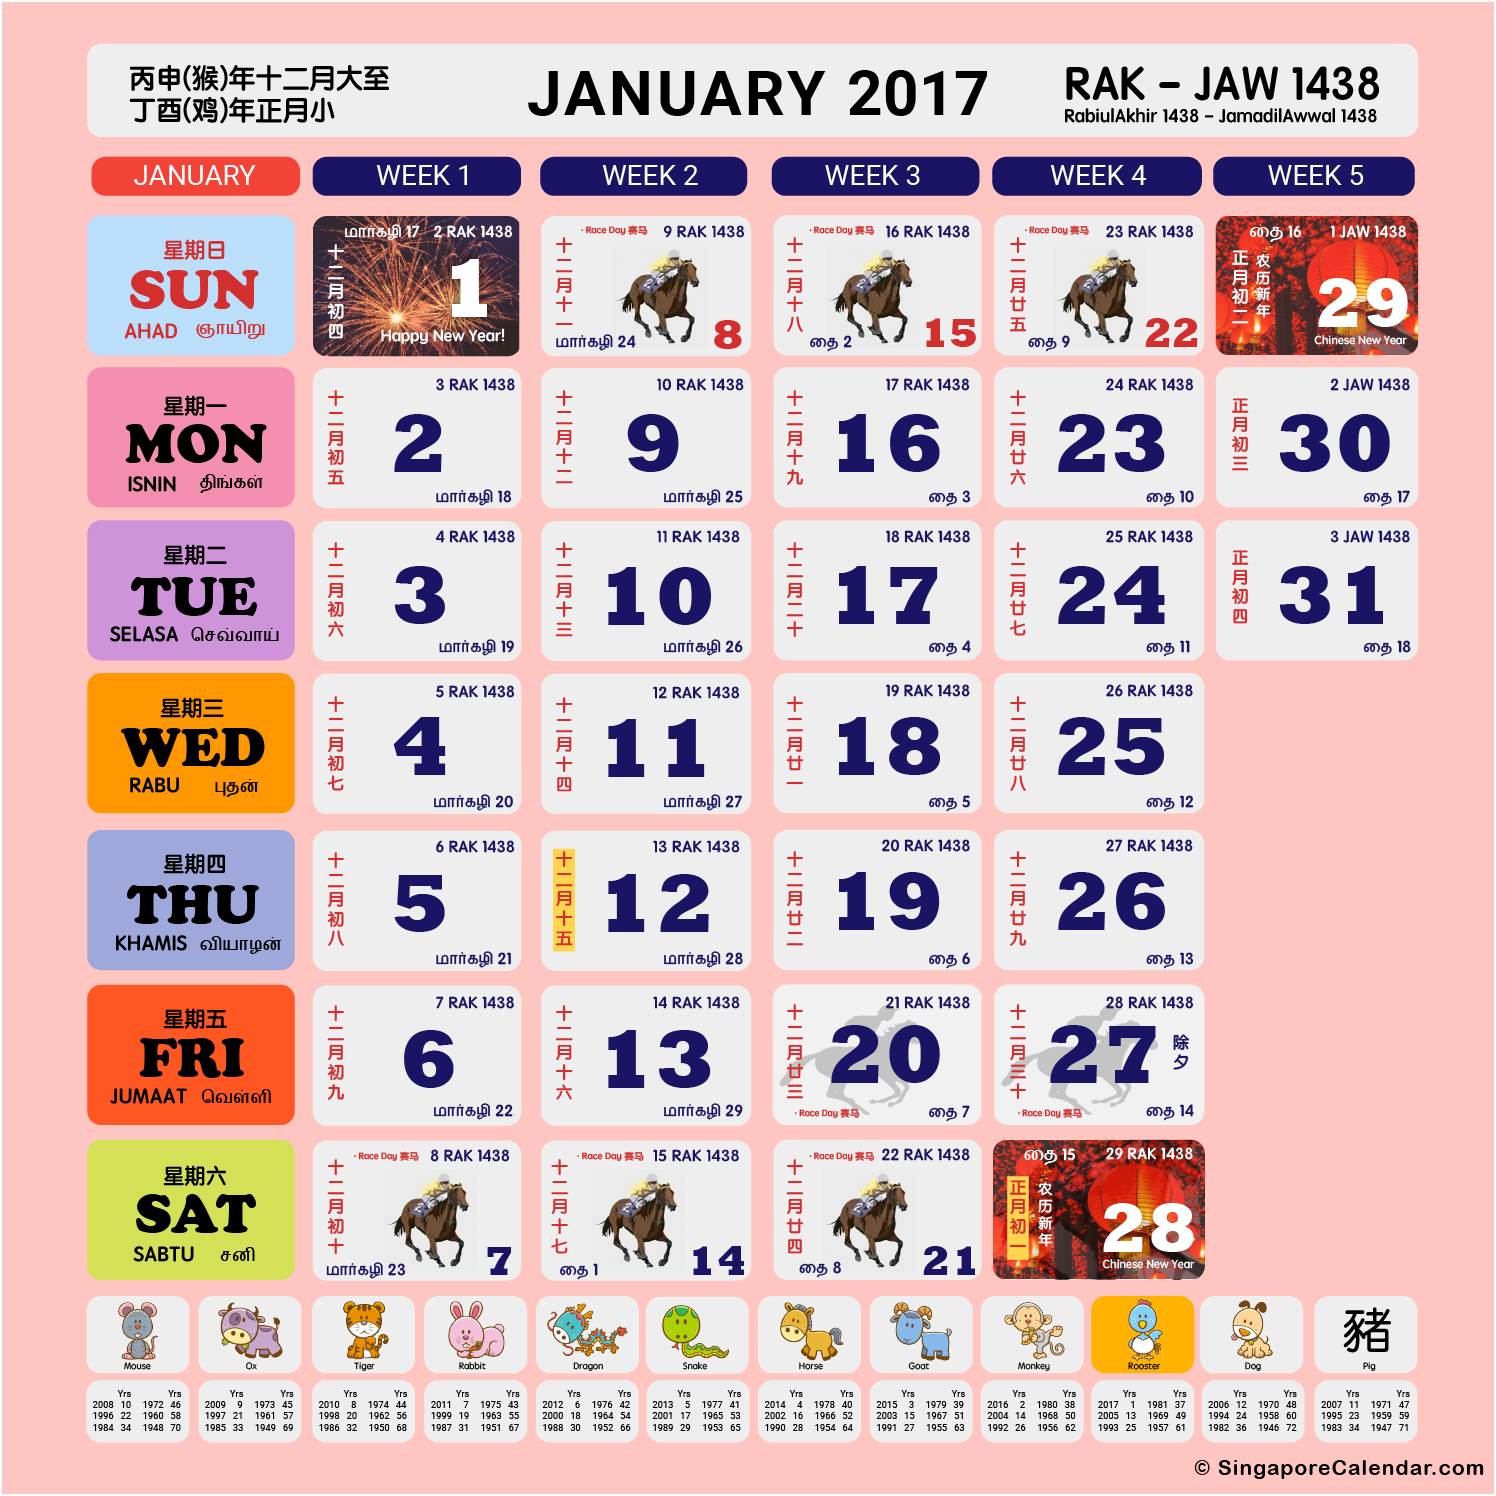 Singapore Calendar Year 2017 Singapore Calendar